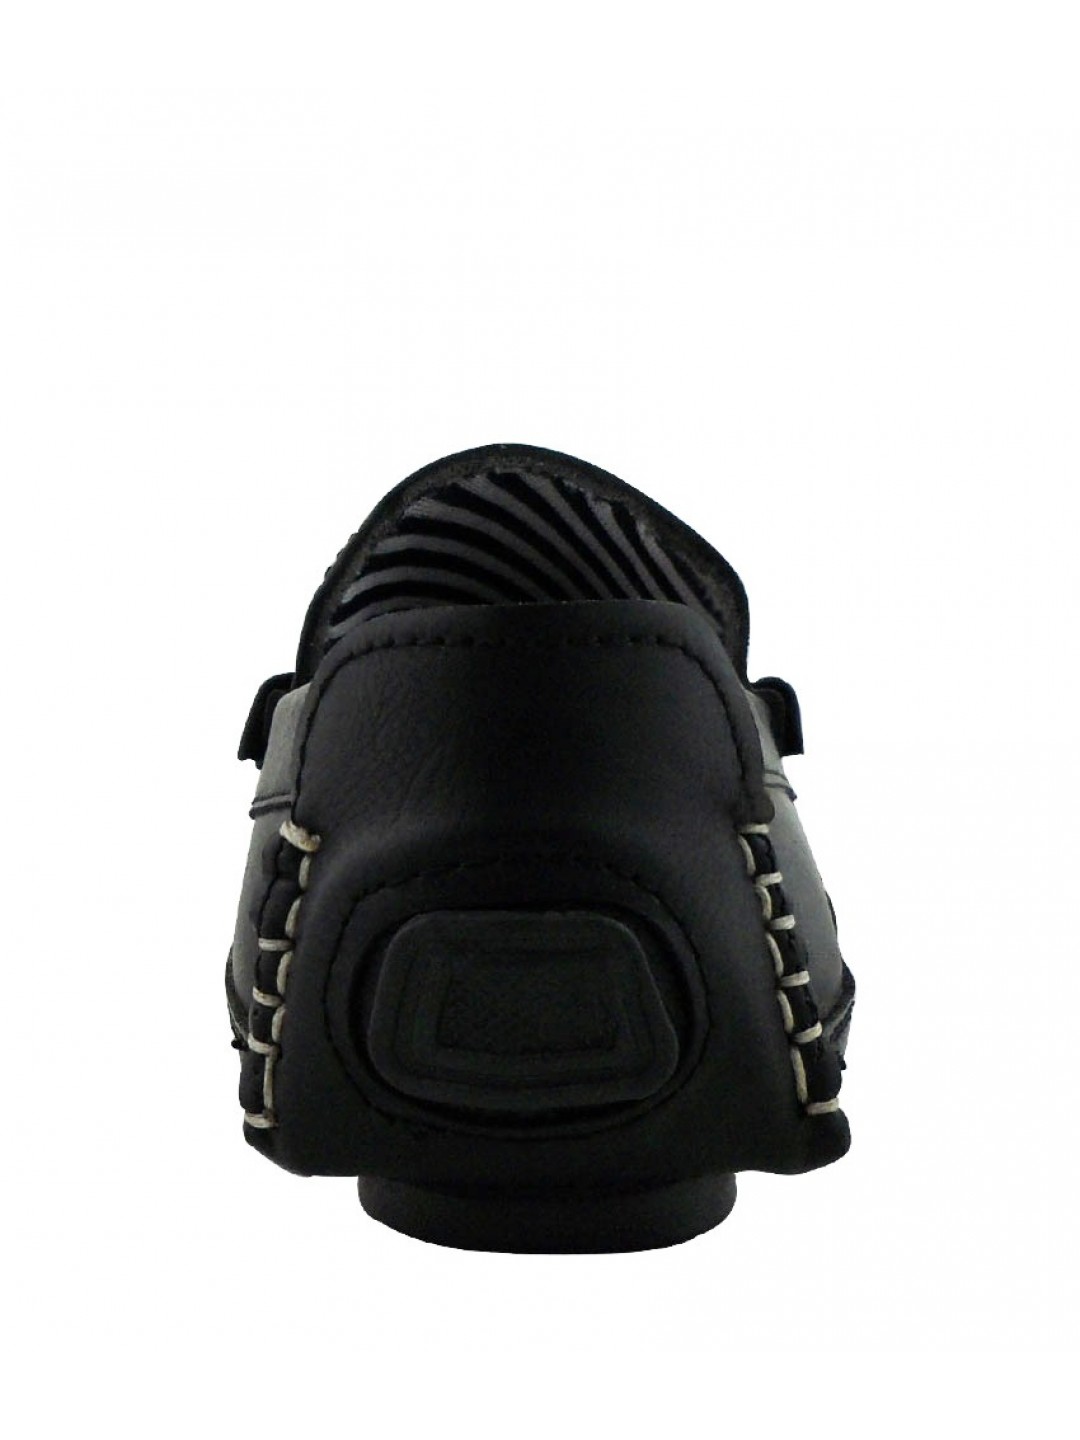 Elvace Stylish Comfy Black Loafer Men Shoes 6007